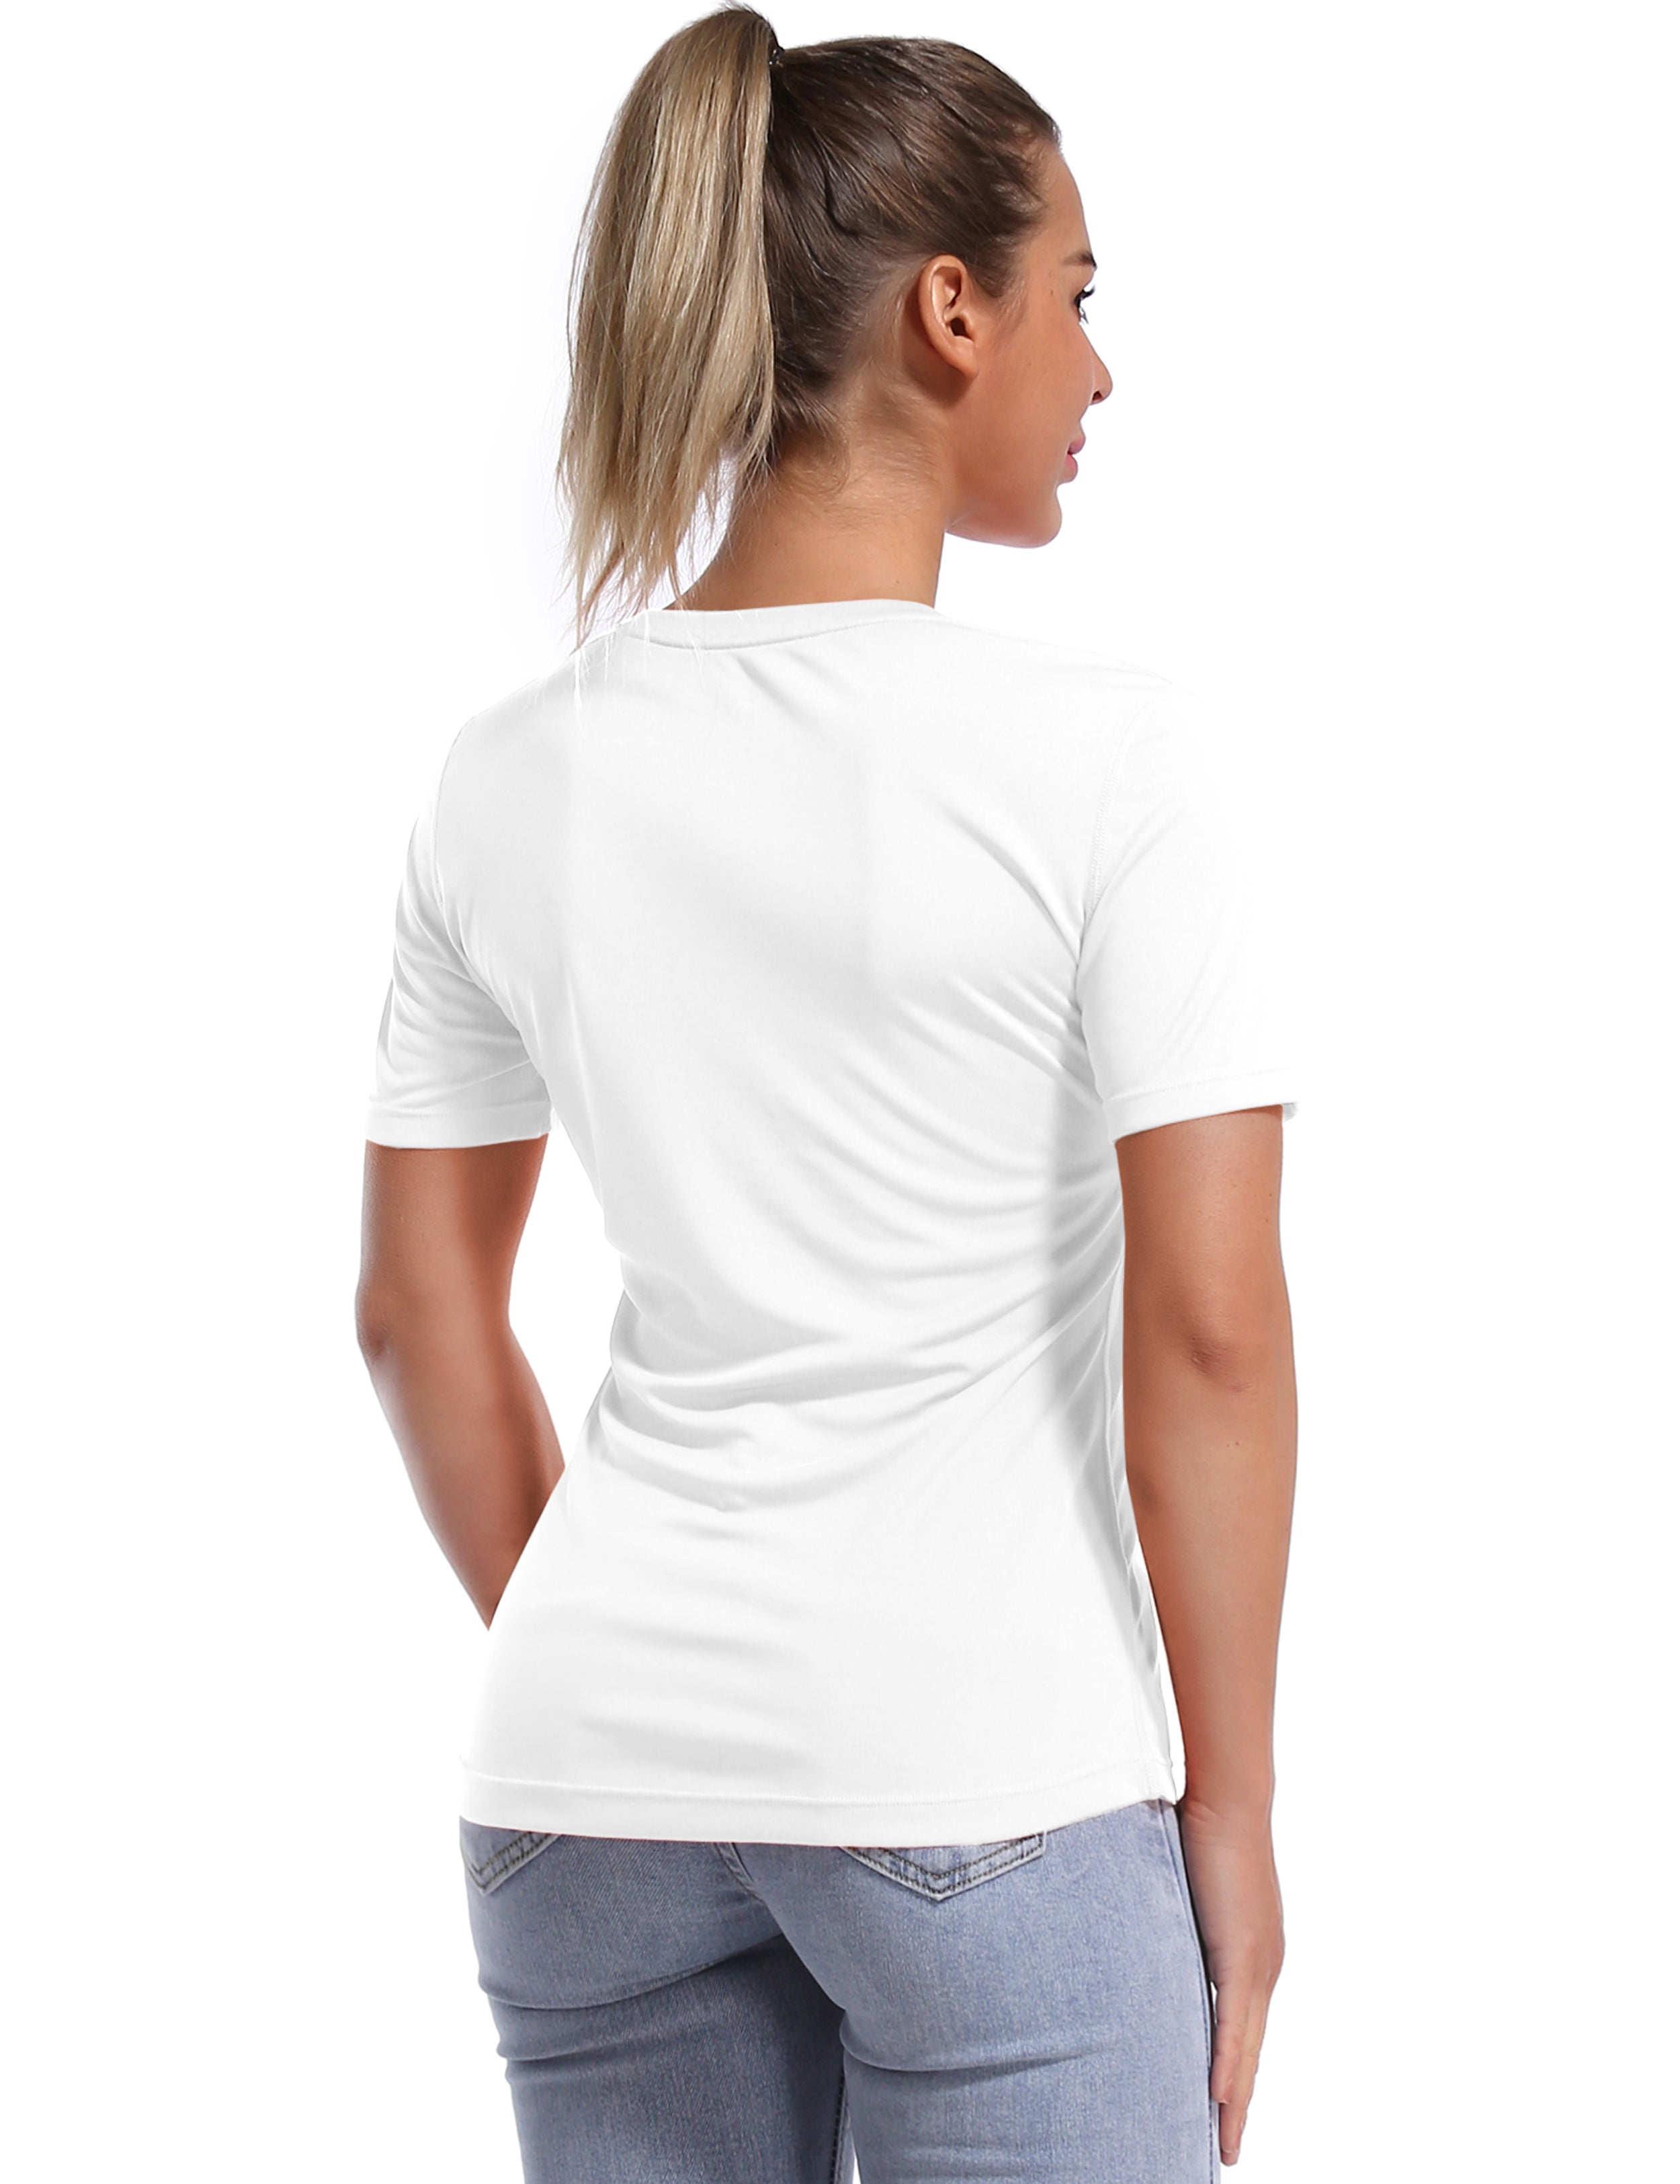 Short Sleeve Athletic Shirts white_yoga